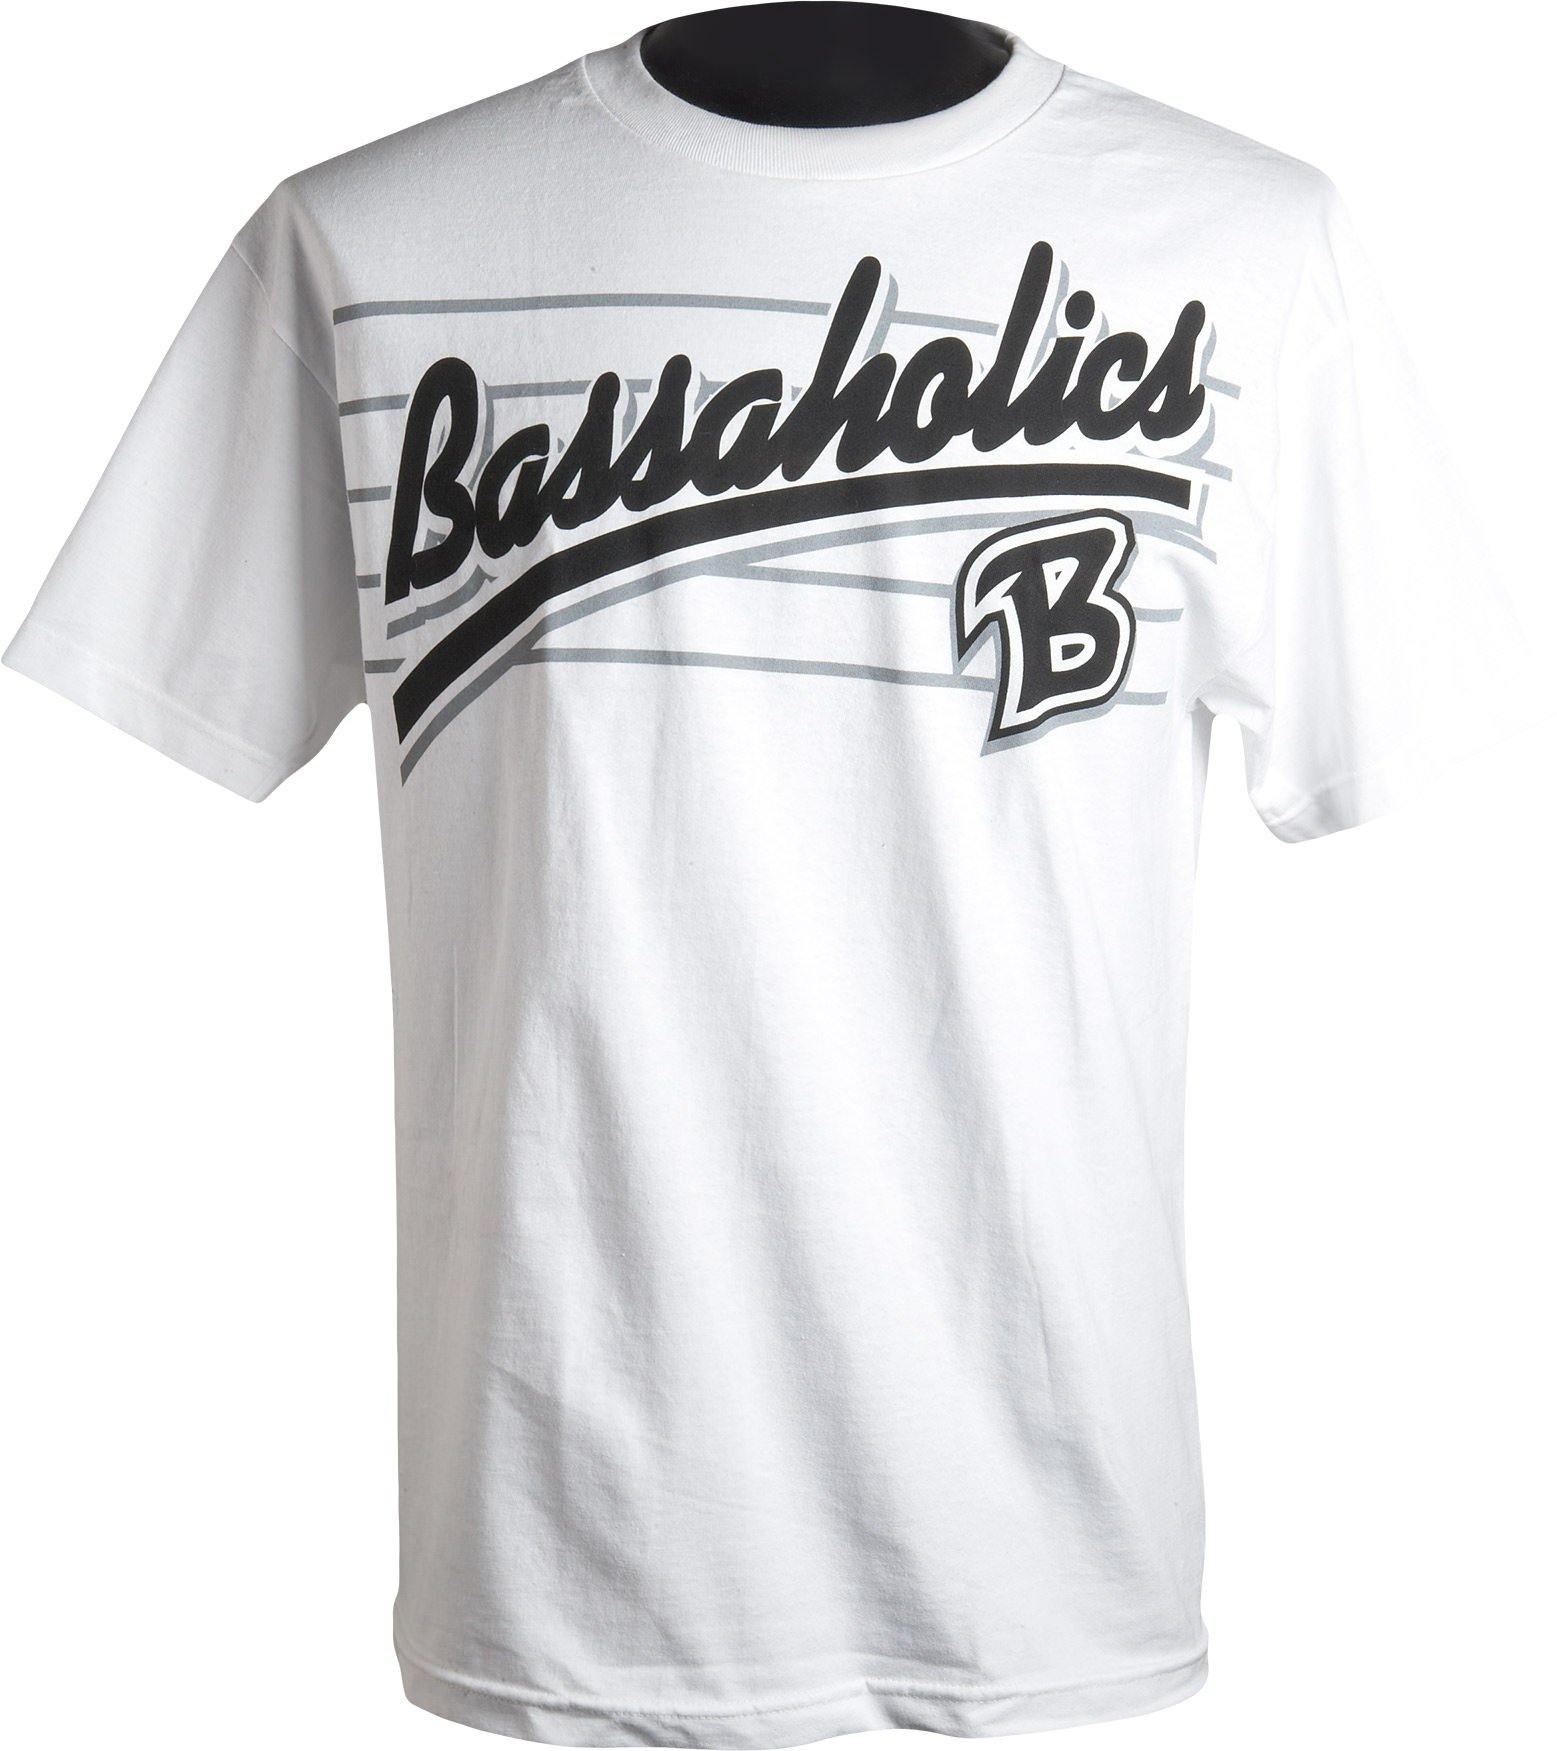 B Metal Bass Fishing Tshirt – Bassaholics